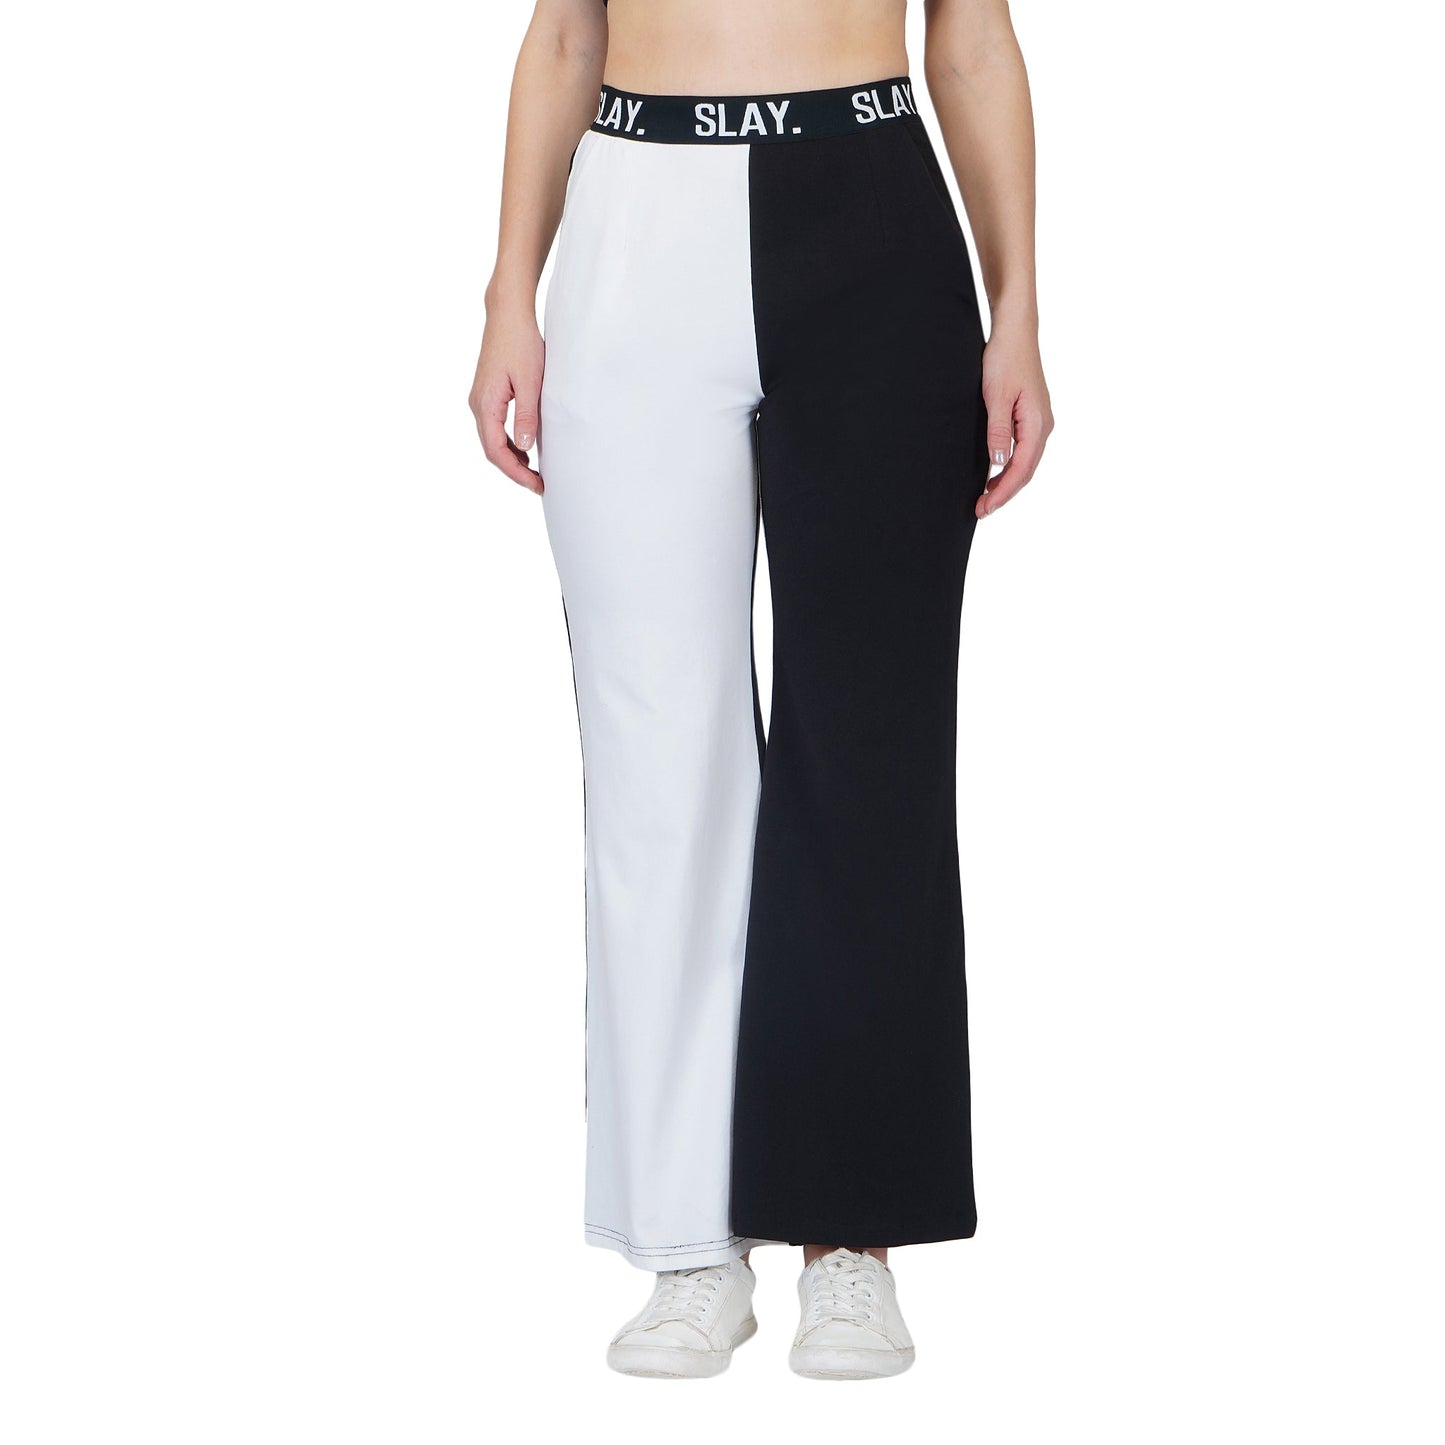 Blazer Pants Outfits Black White 2 Piece Set Suit Fashion Accessories | eBay